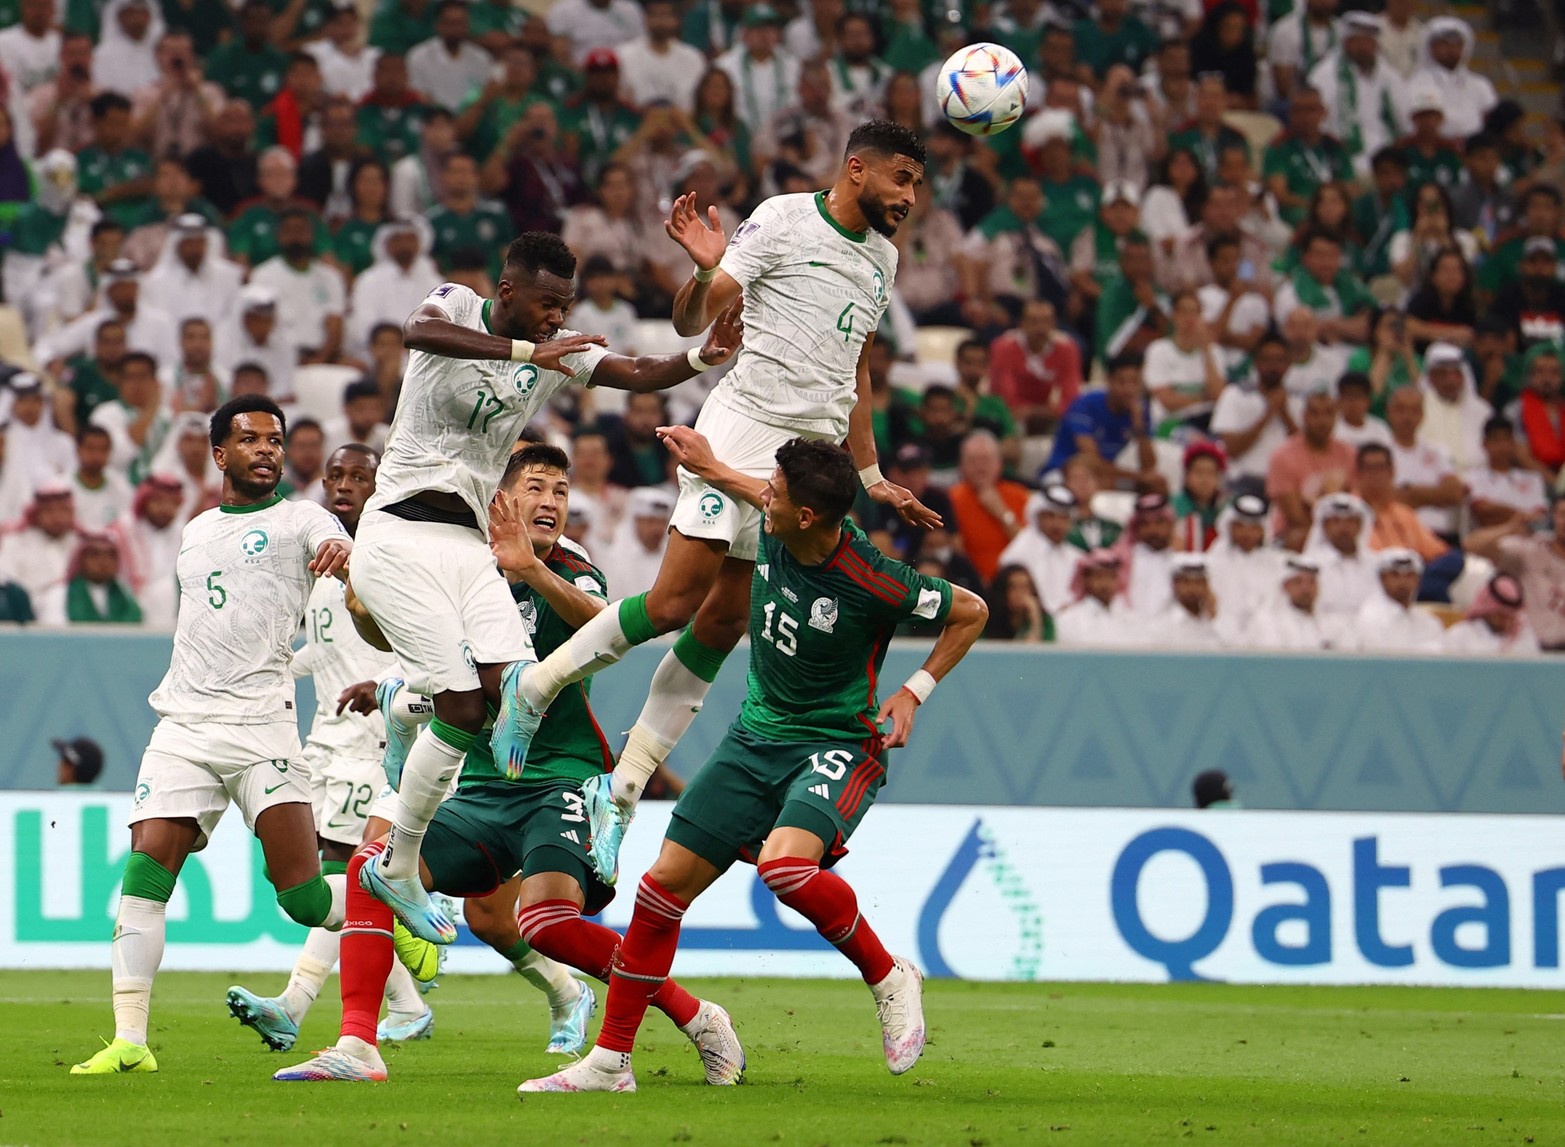 En el mismo grupo de Argentina, México le ganó a Arabia Saudita pero no logró la clasificación a los octavos del Mundial de Qatar 2022.